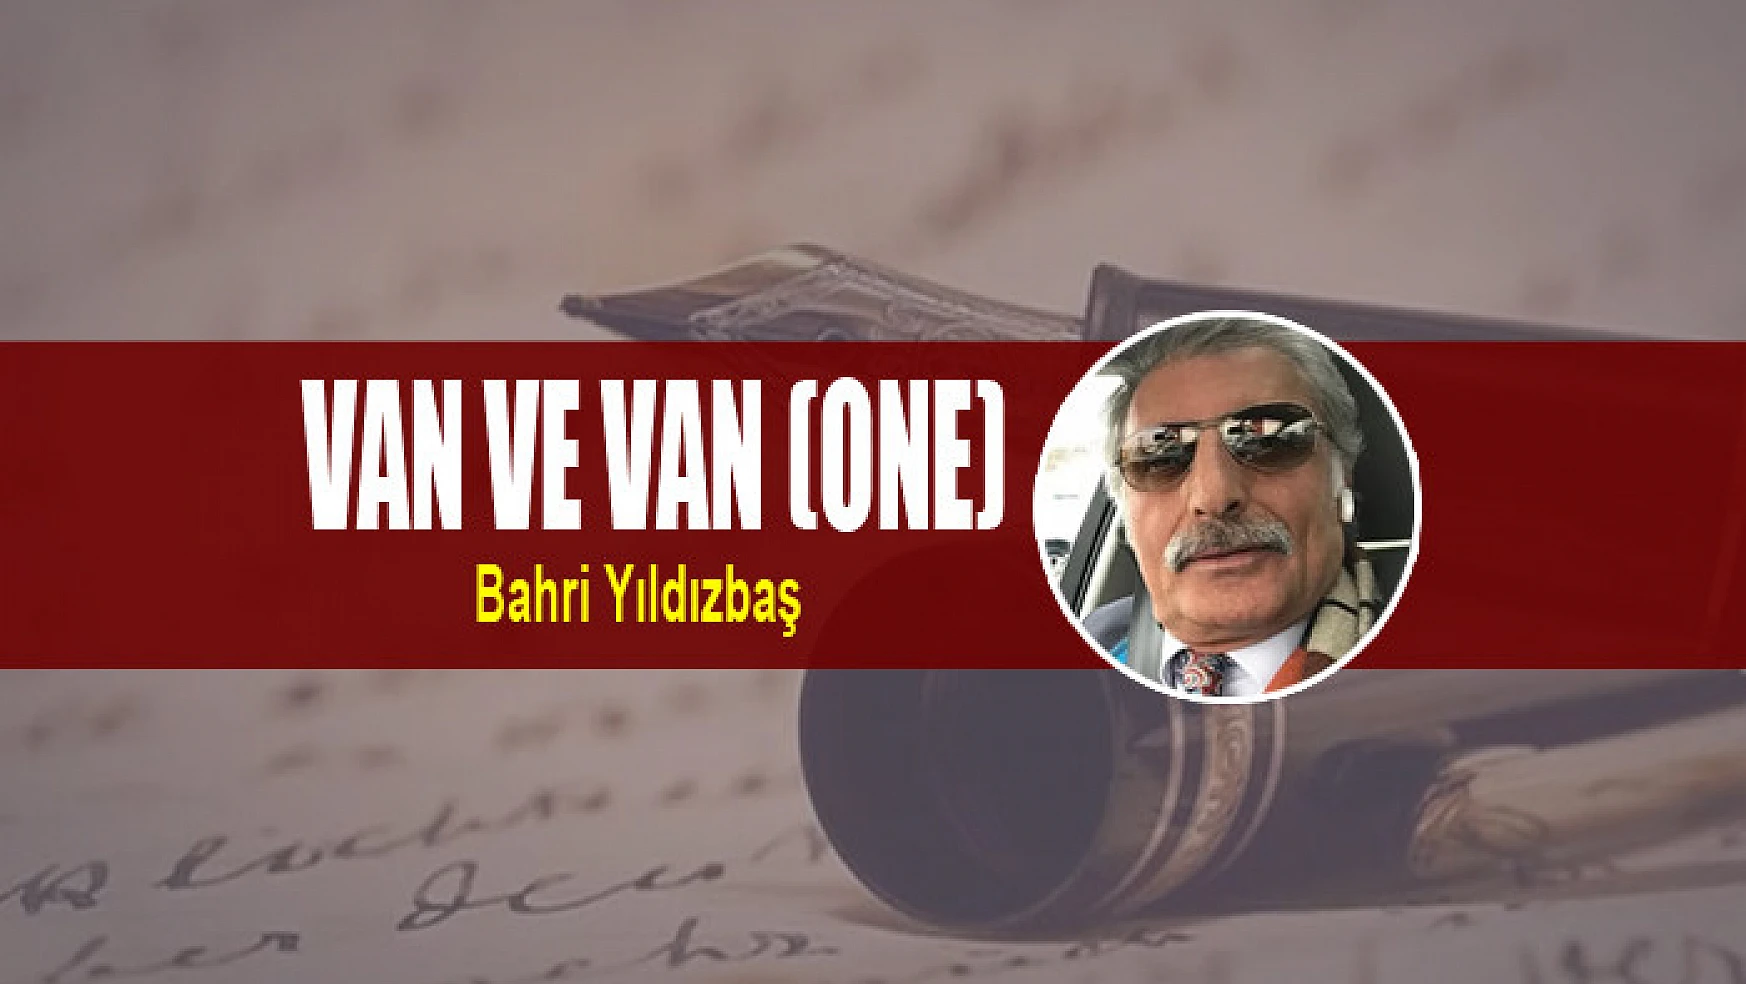 Van ve van (one)